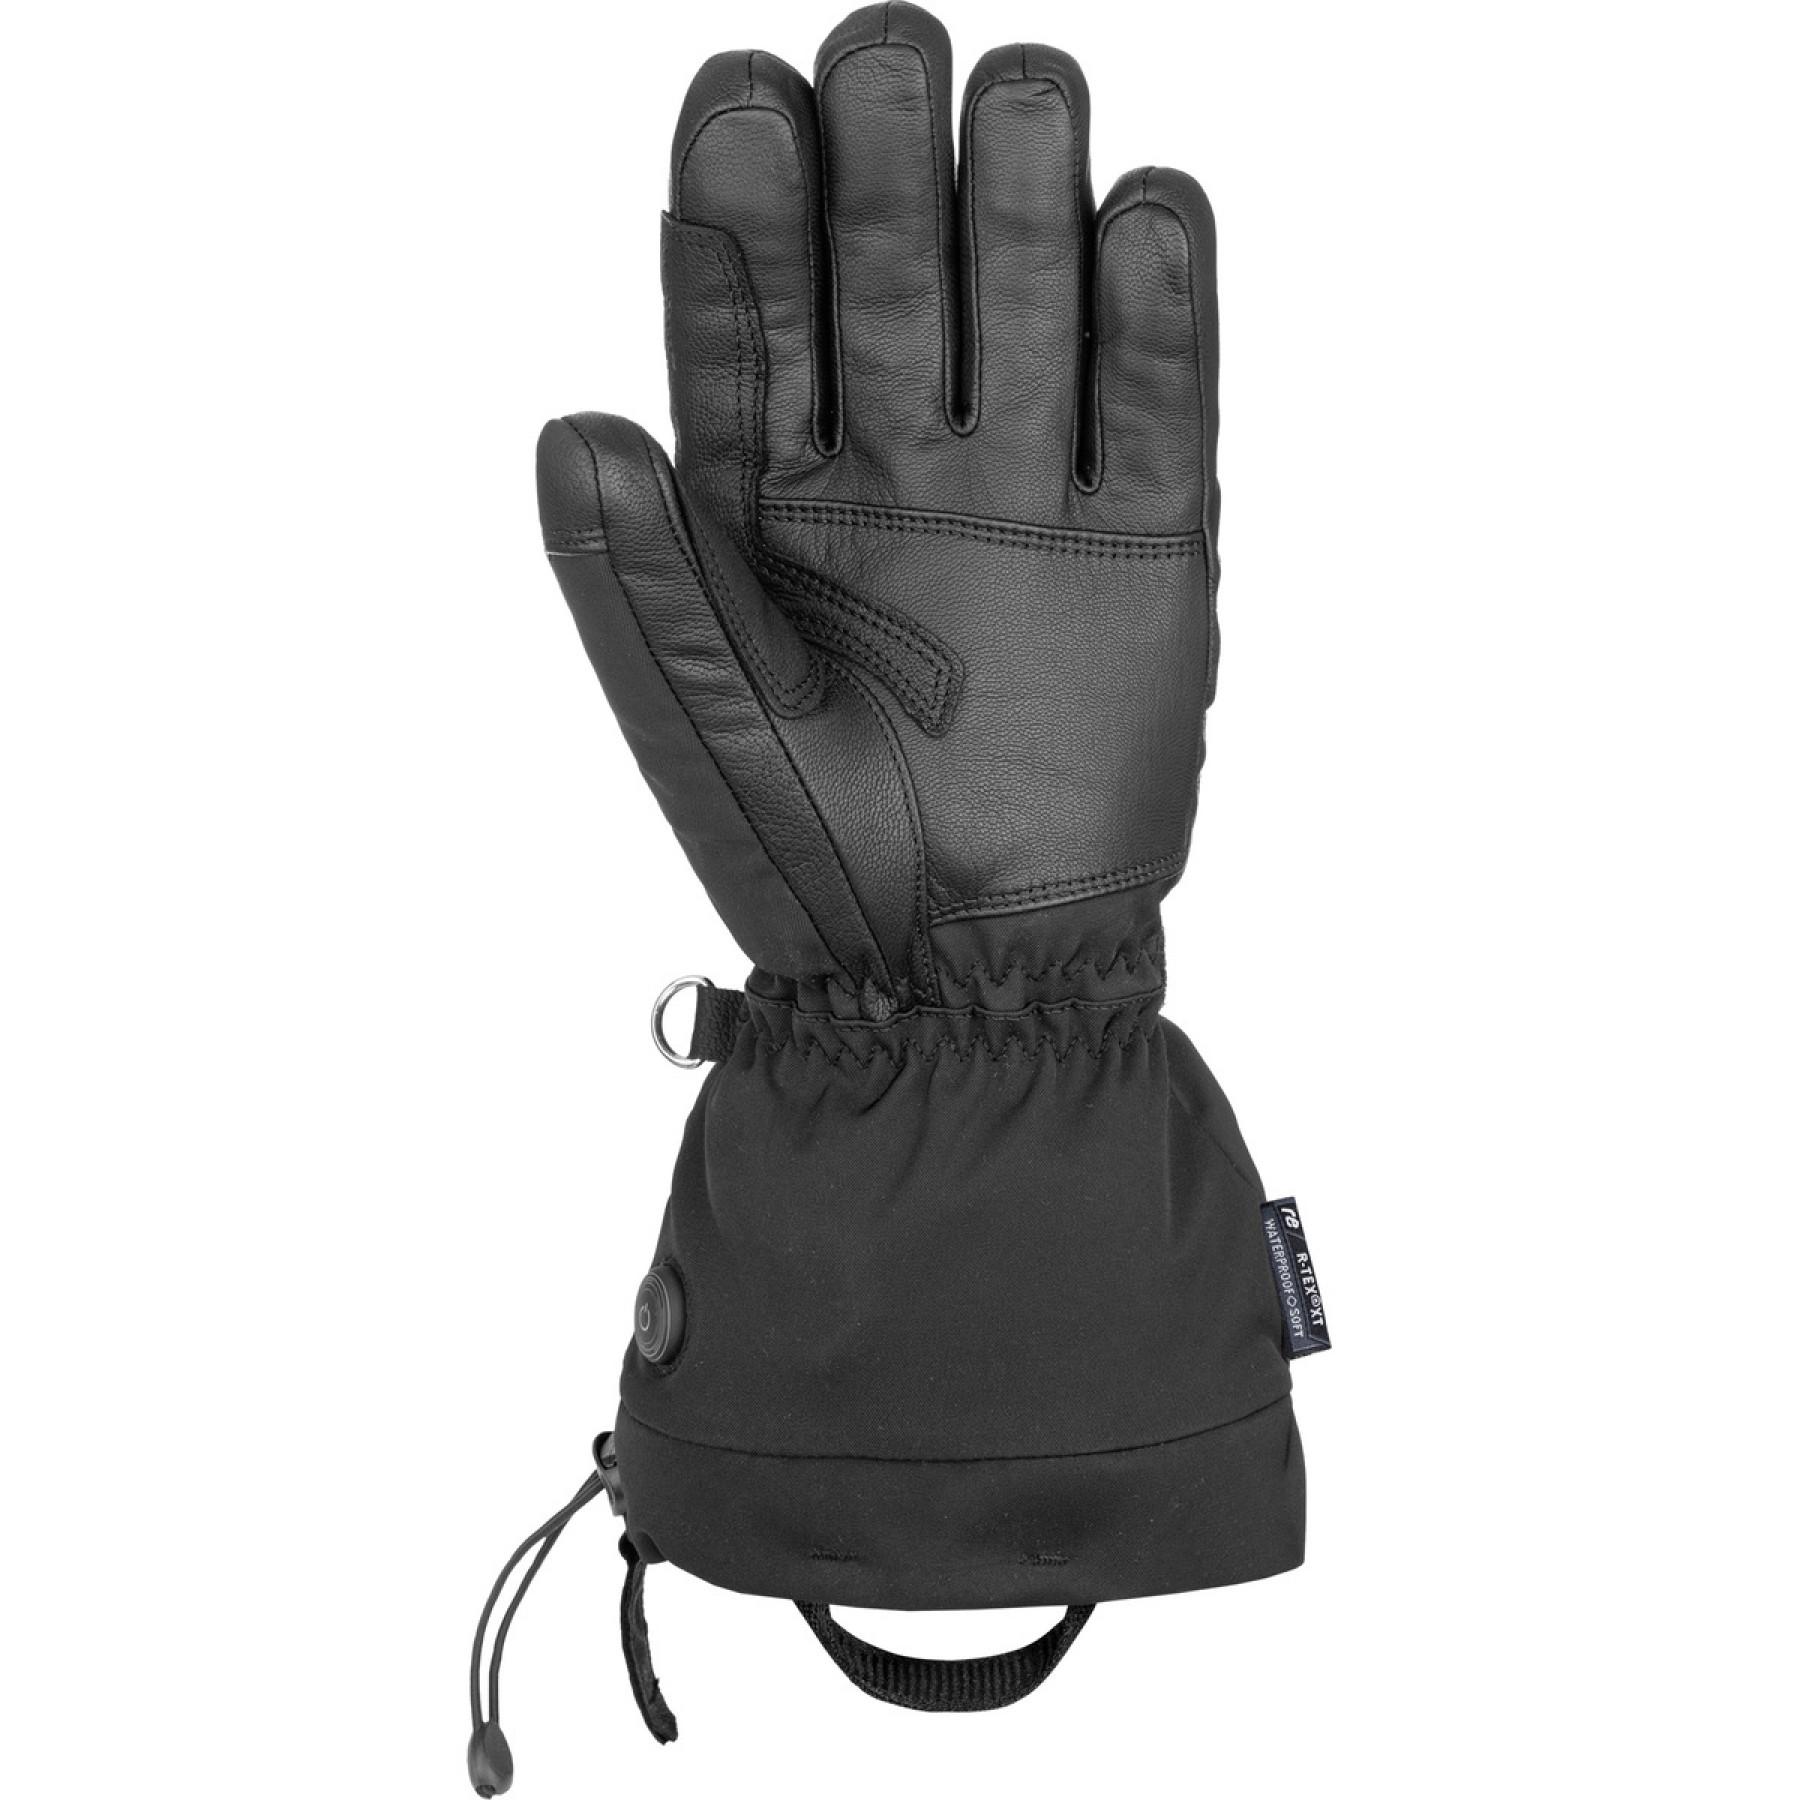 Gloves Reusch Instant Heat R-tex® Xt